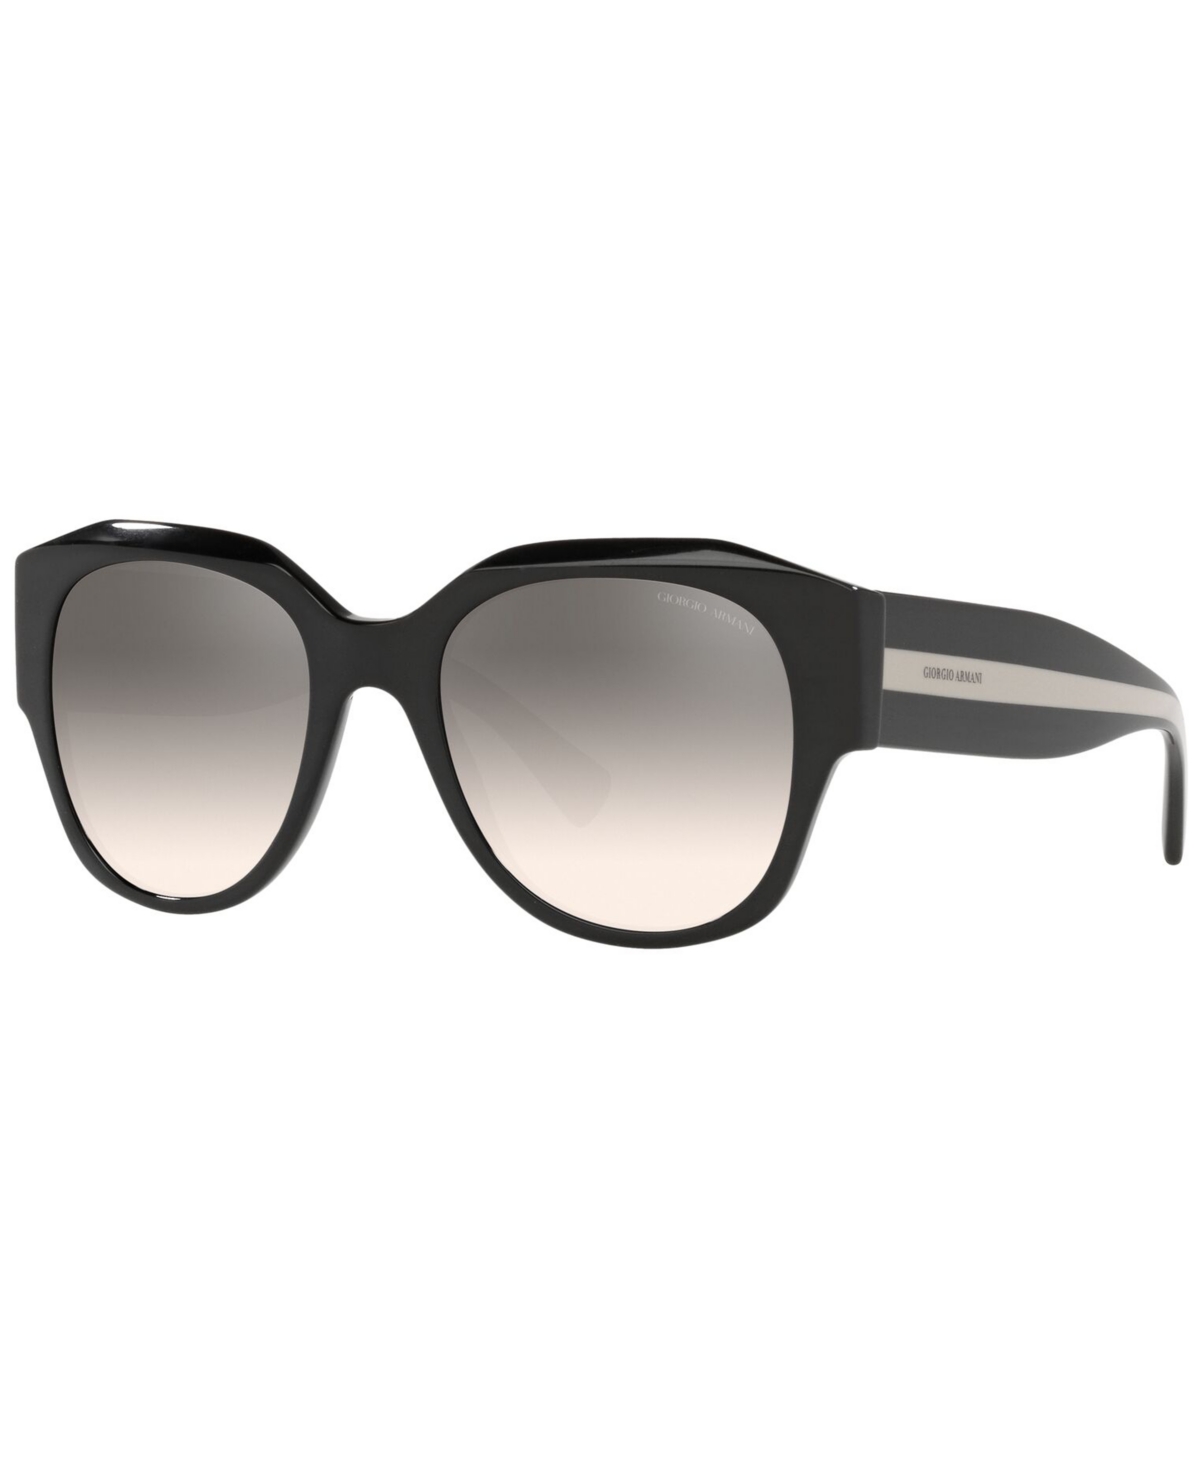 Giorgio Armani Women's Sunglasses, Ar8140 53 In Black,gradient Brown Mirror Silver